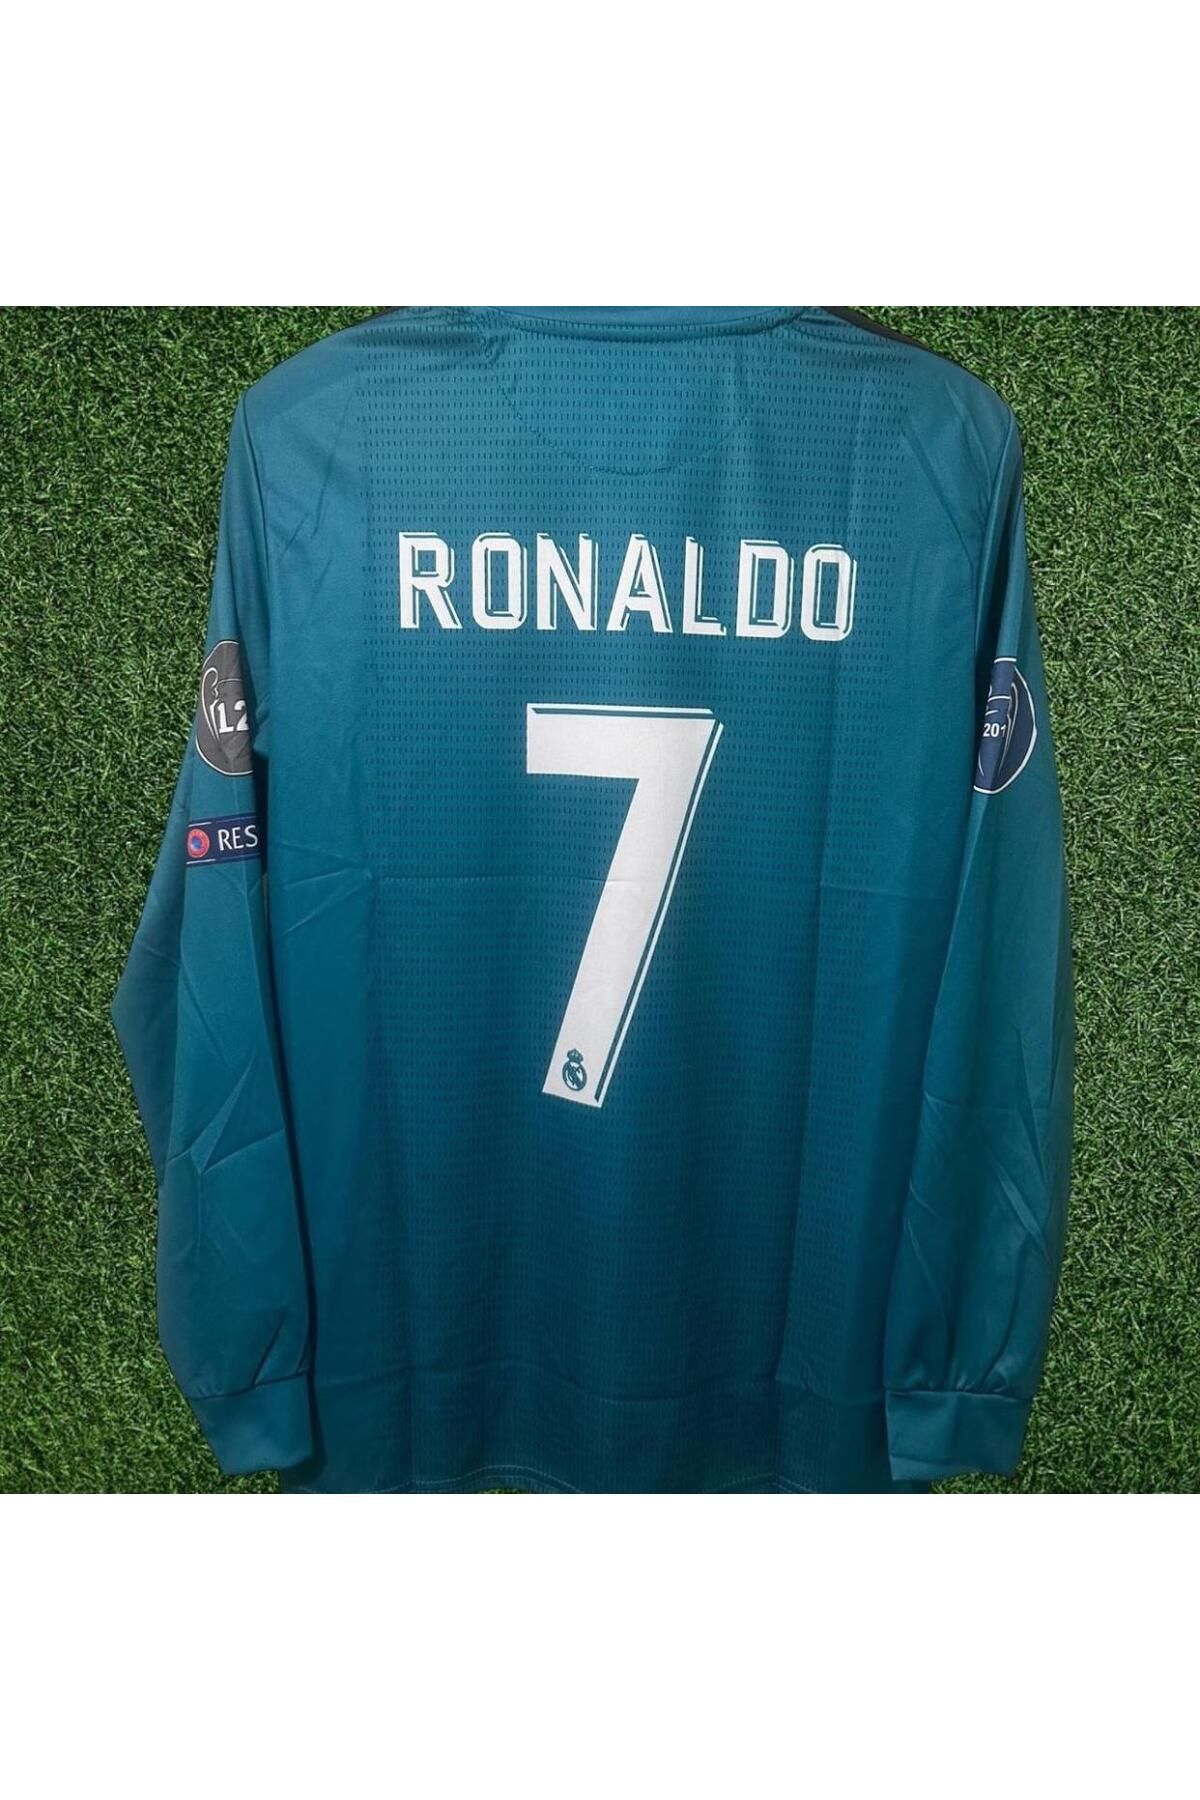 BARBITOS Real Madrid Cristiano Ronaldo Turkuaz Mavisi Yetişkin Uzun Kol Futbol Forması